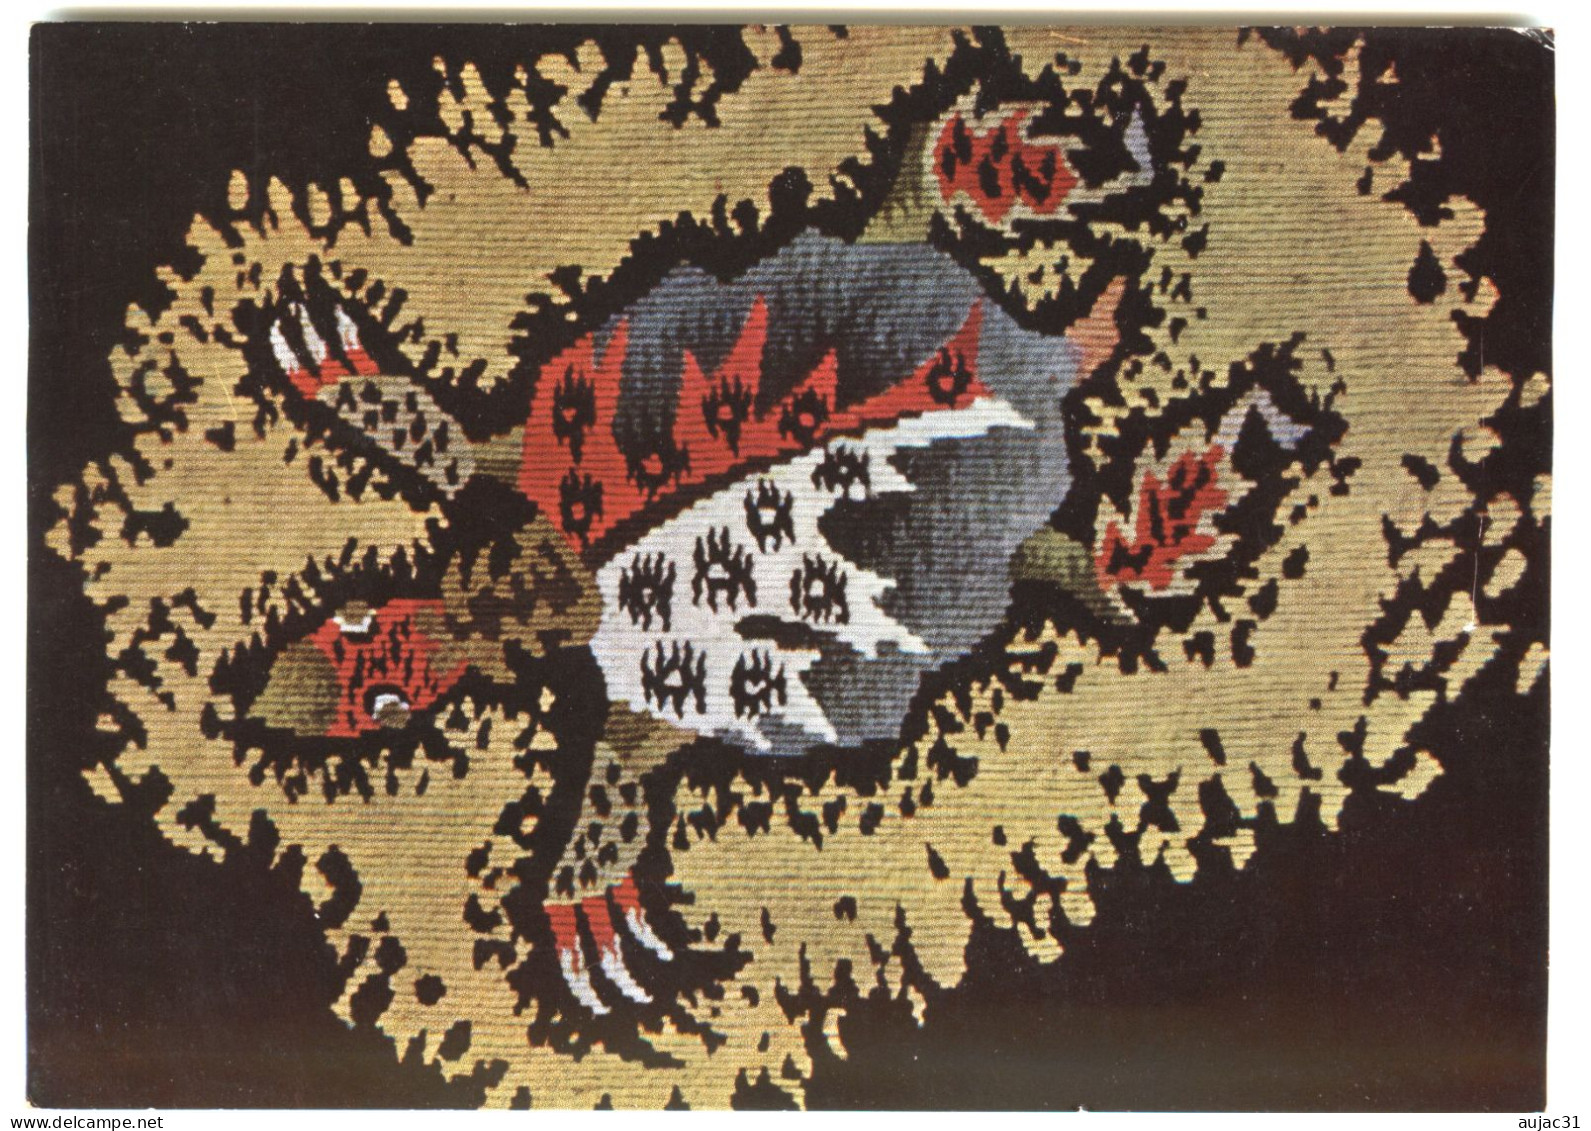 Jean Lurçat - Peintre - Céramiste -Créateur de tapisserie- Né à Bruyères - Décédé à Saint Paul de Vence Lot de 15 cartes